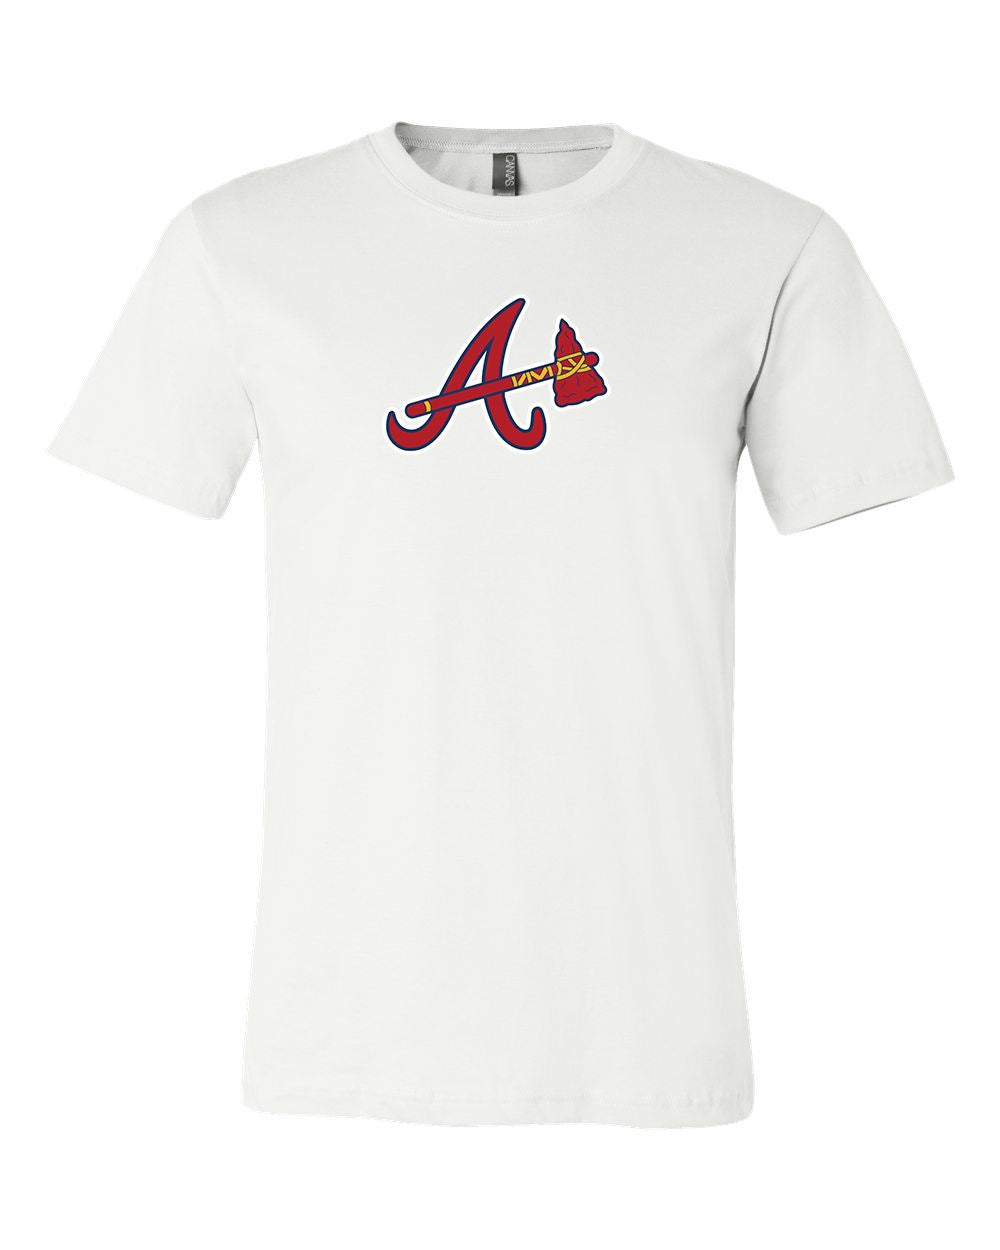 Atlanta Braves Tshirt - T-shirts Low Price